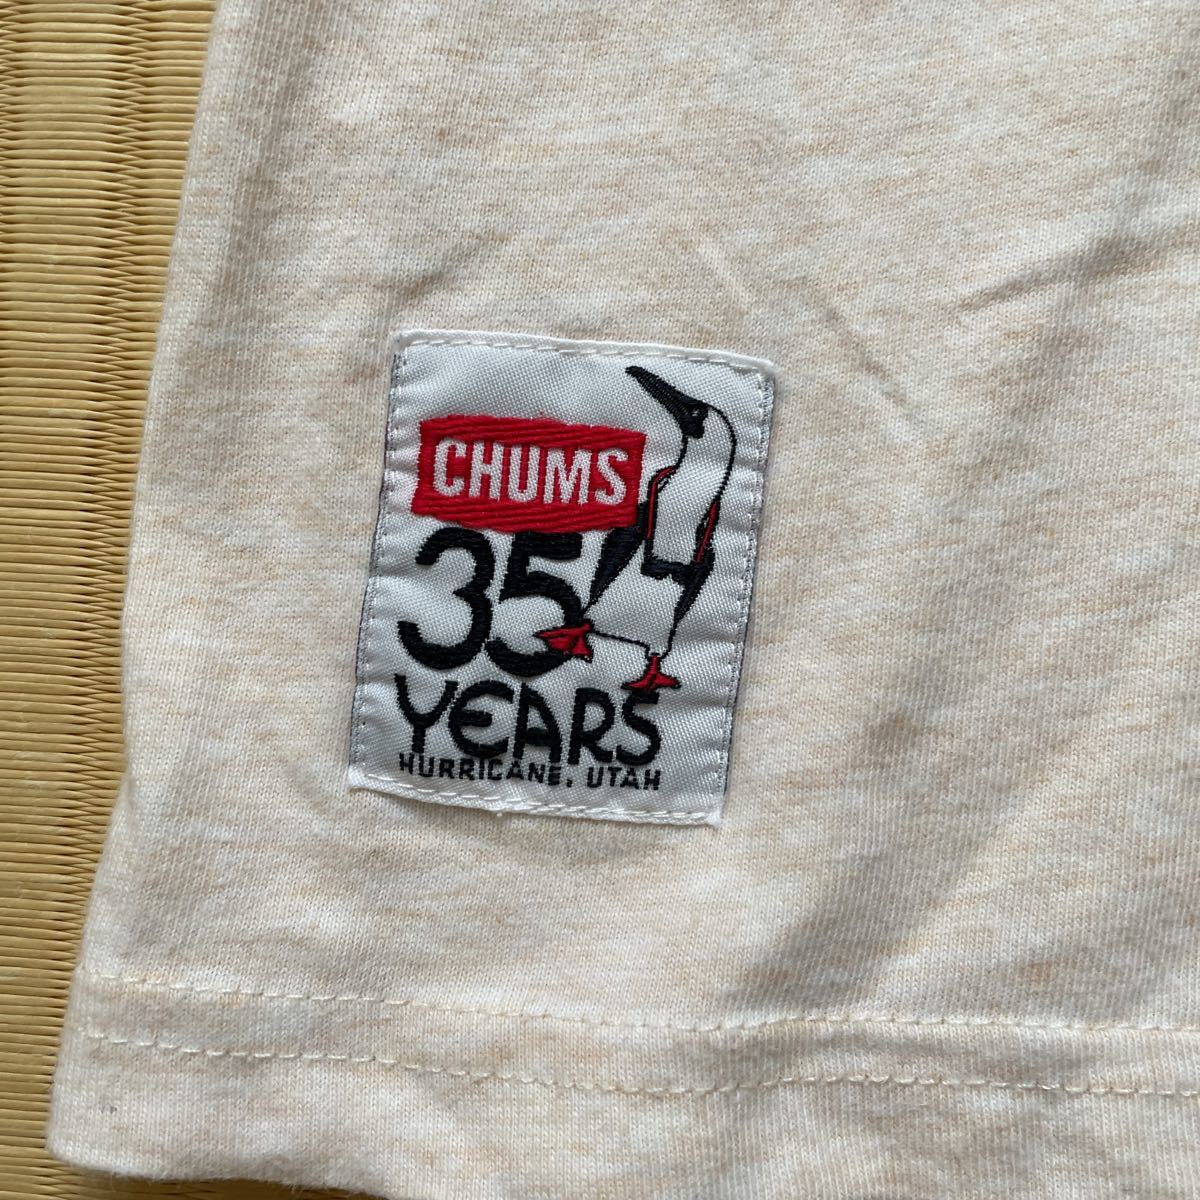 ...  лого   футболка  CHUMS 35YEARS HURRICANE, UTAH  футболка с коротким руковом  chums  лого  